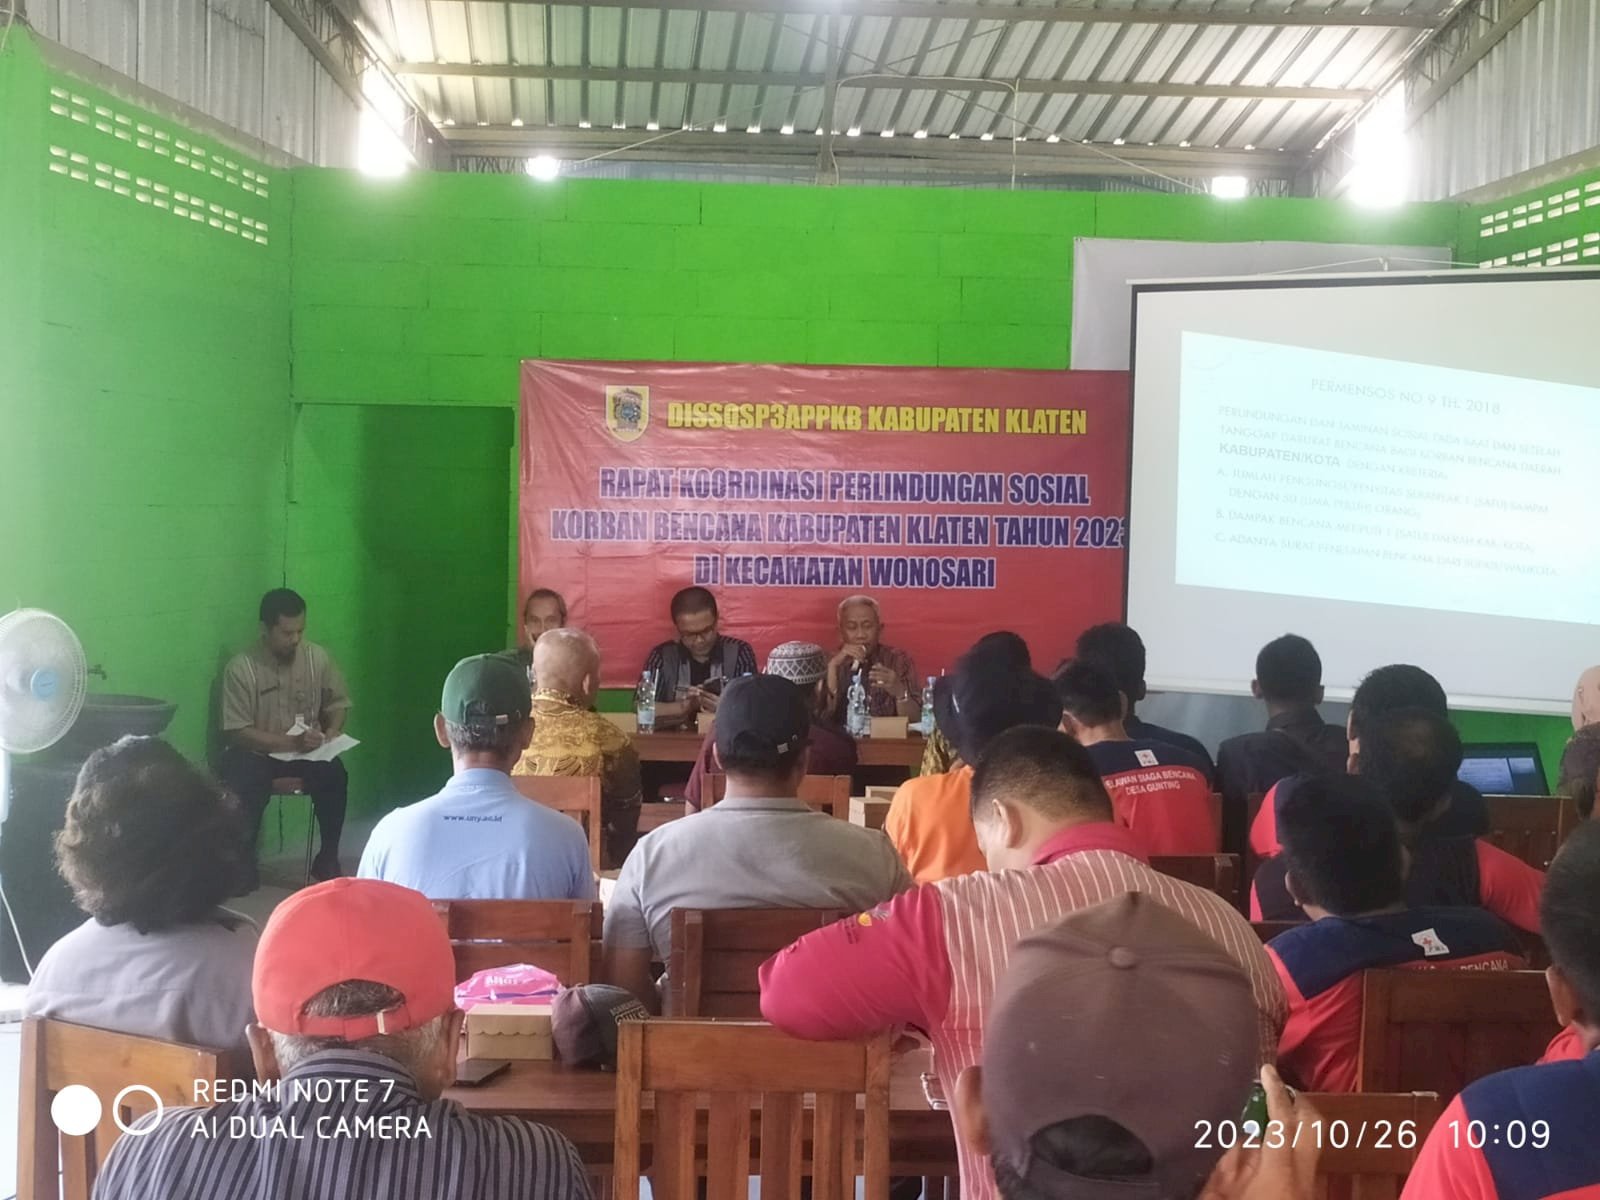 Rapat Koordinasi Perlindungan Sosial Korban Bencana Kabupaten Klaten